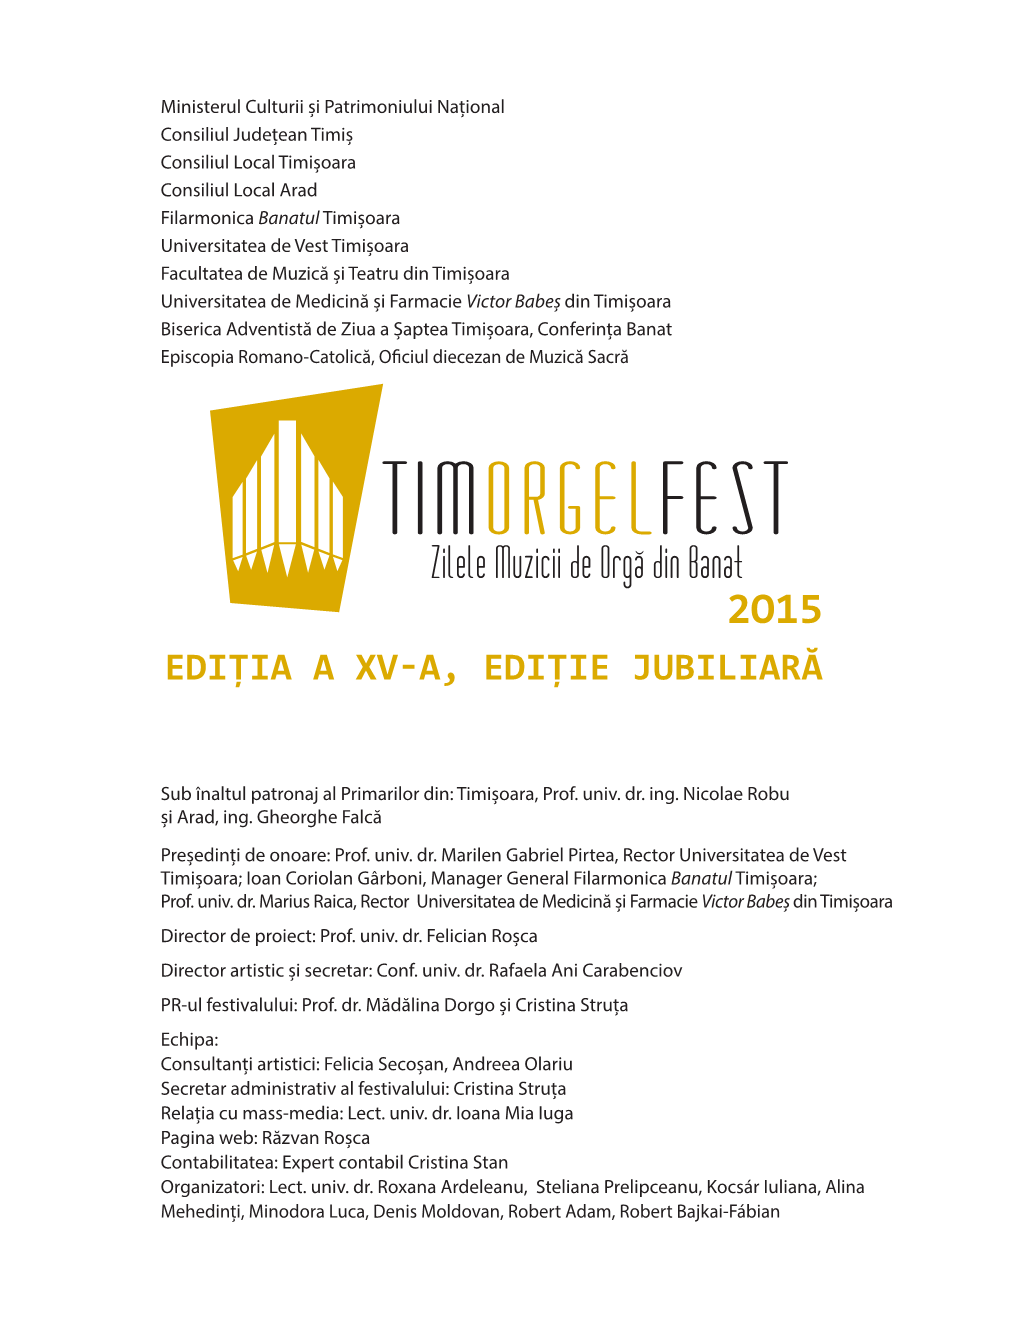 Timorgelfest 2015 BROSURA.Indd